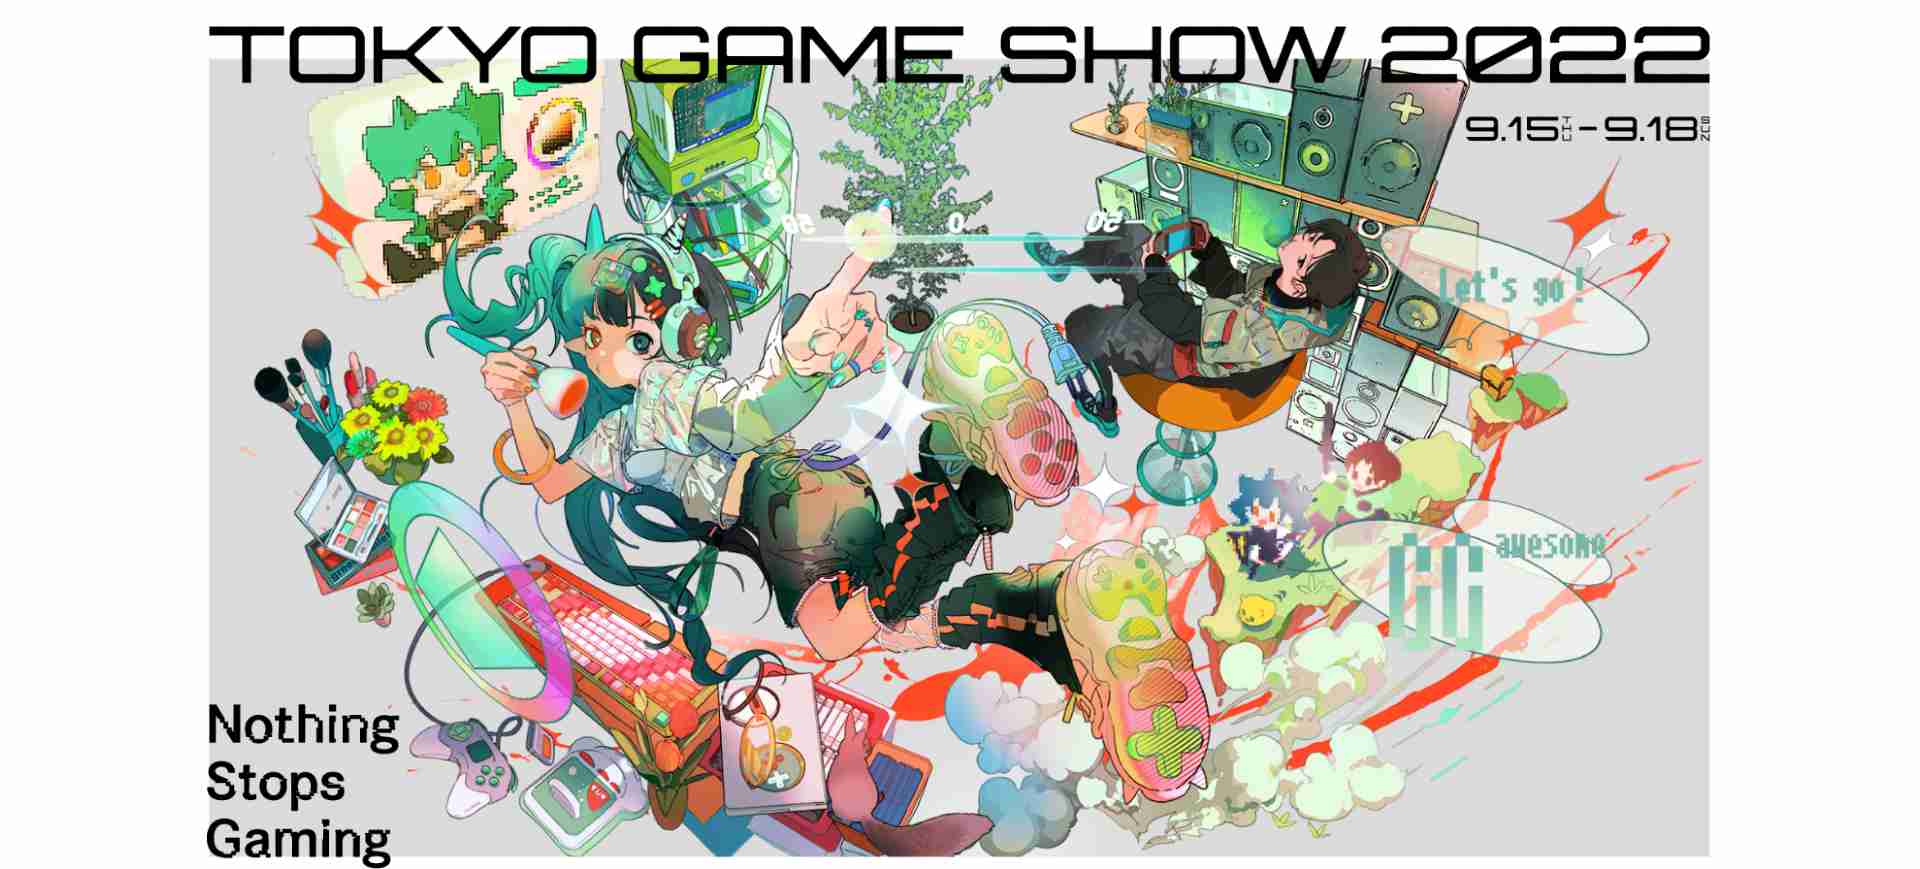 Imagem do banner de lançamento do evento de games Tokyo Game Show 2022